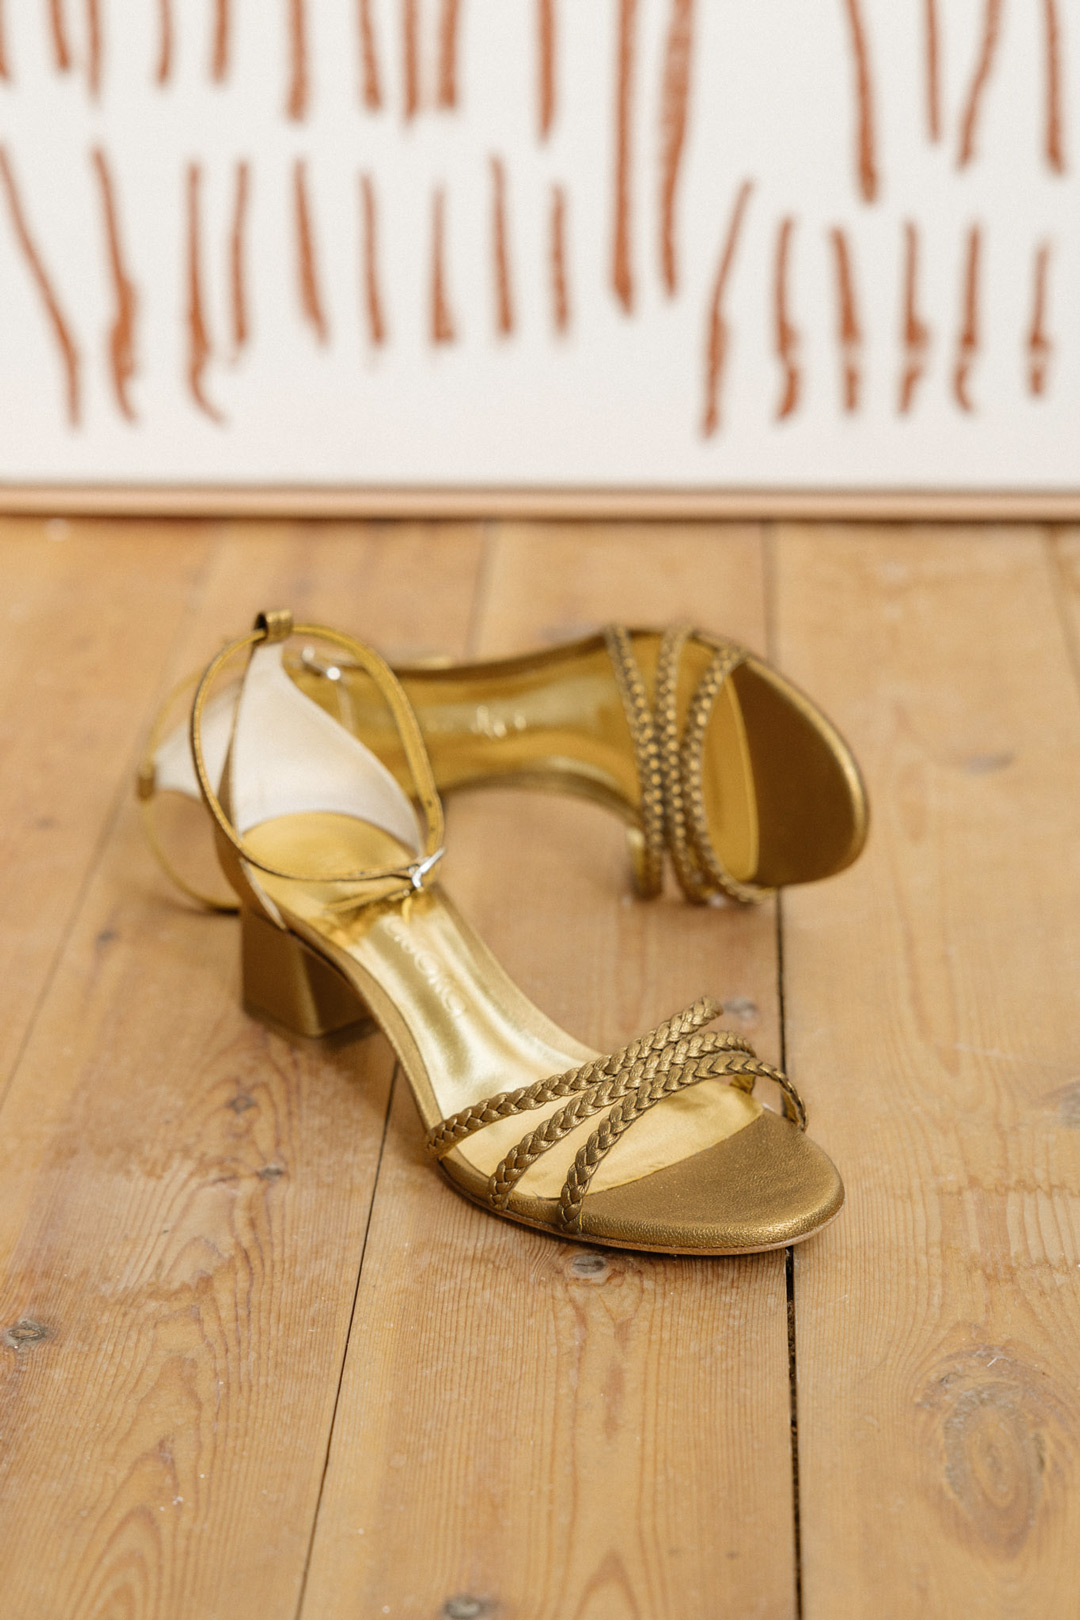 Zapato de novia Hilaria Pan de Oro de Flordeasoka, destacando su acabado dorado y diseño elegante para el gran día.